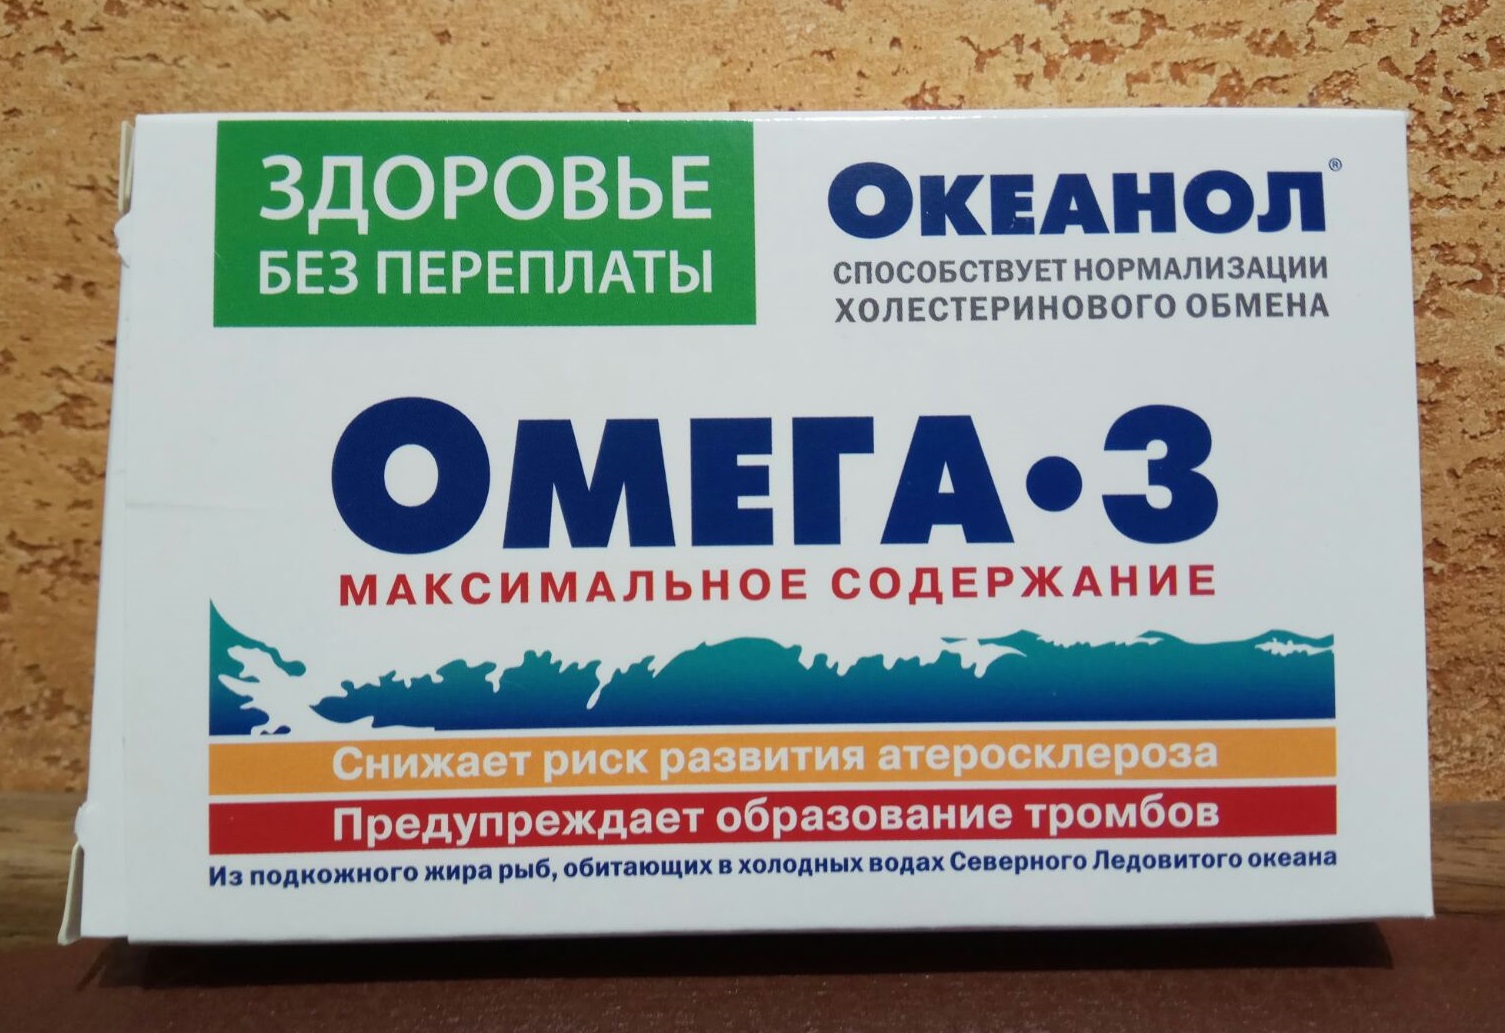 Рыбий жир Океанол 30 капс Омега 3 для сосудов, от холестерина, натуральный концентрированный жир океанических рыб